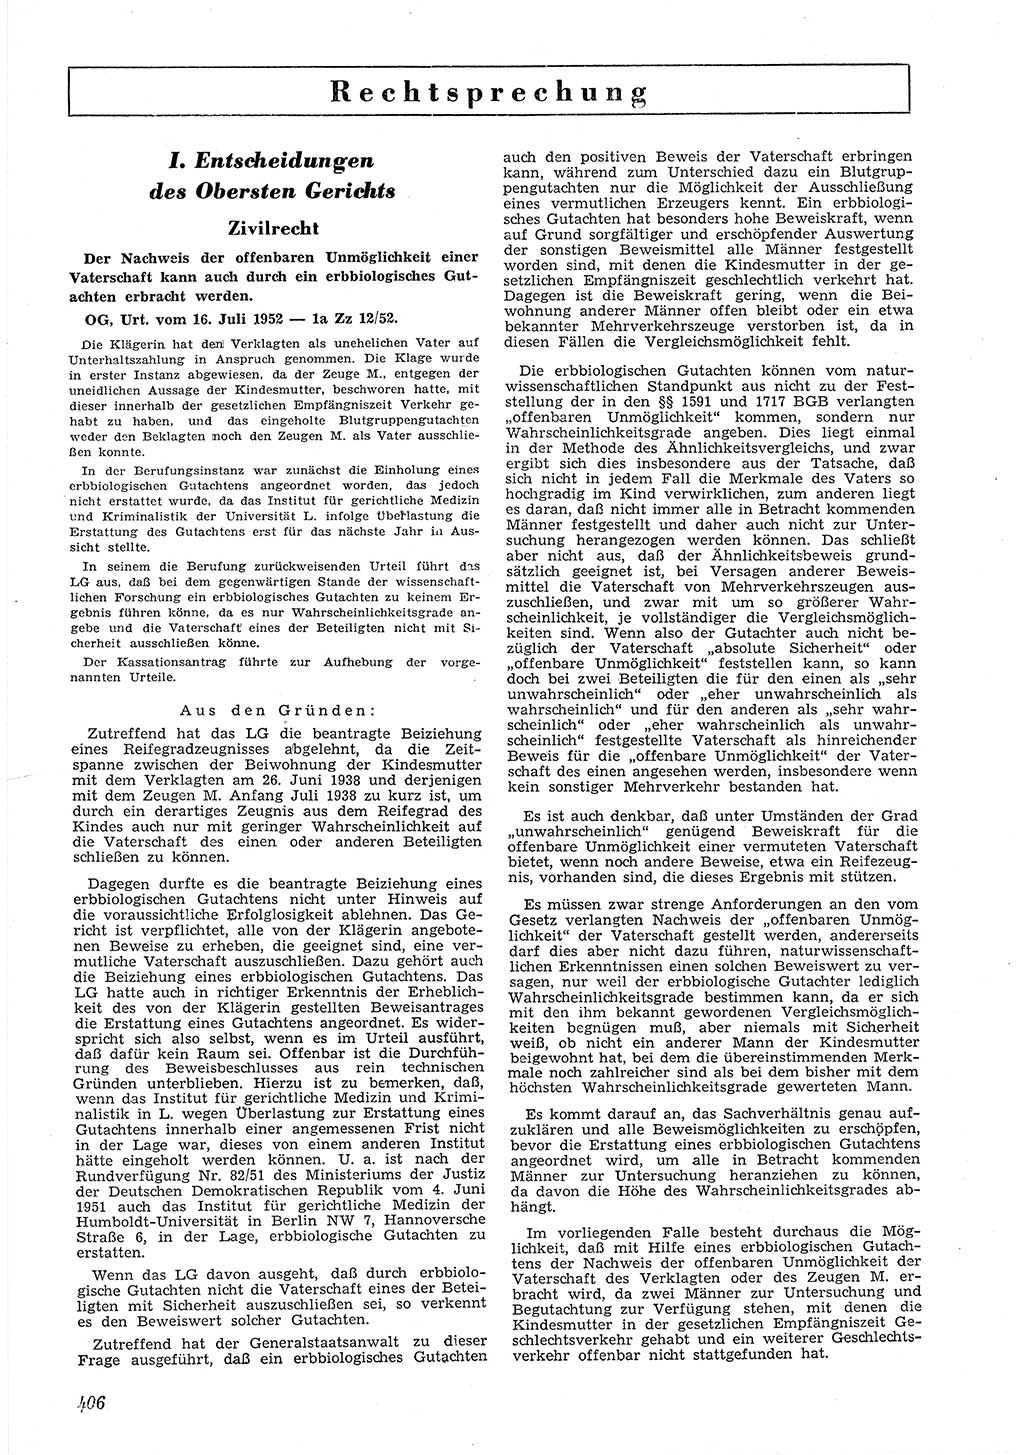 Neue Justiz (NJ), Zeitschrift für Recht und Rechtswissenschaft [Deutsche Demokratische Republik (DDR)], 6. Jahrgang 1952, Seite 406 (NJ DDR 1952, S. 406)